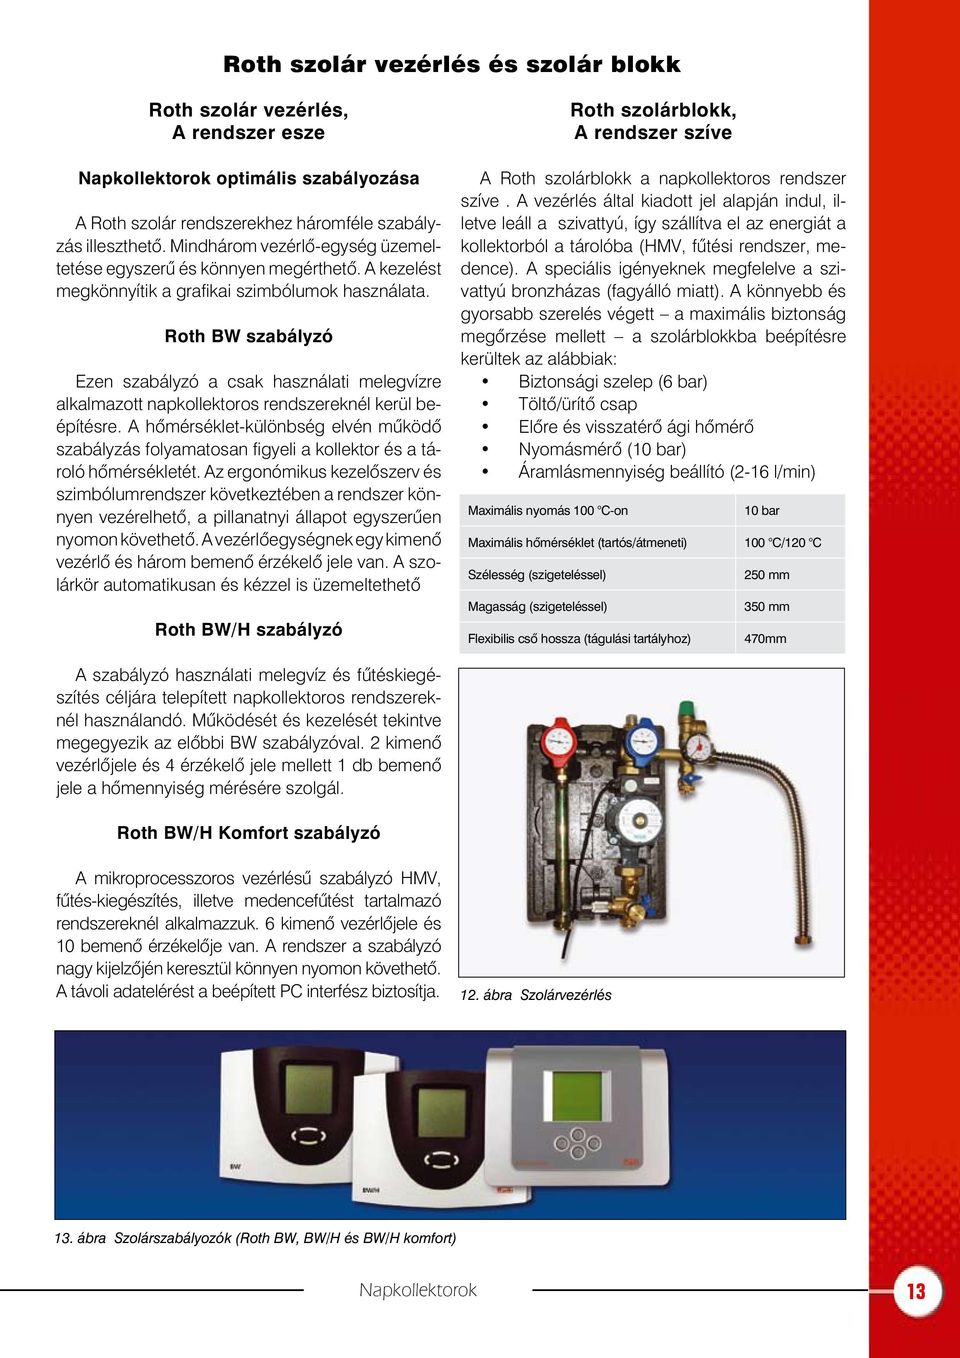 Roth BW szabályzó Ezen szabályzó a csak használati melegvízre alkalmazott napkollektoros rendszereknél kerül beépítésre.